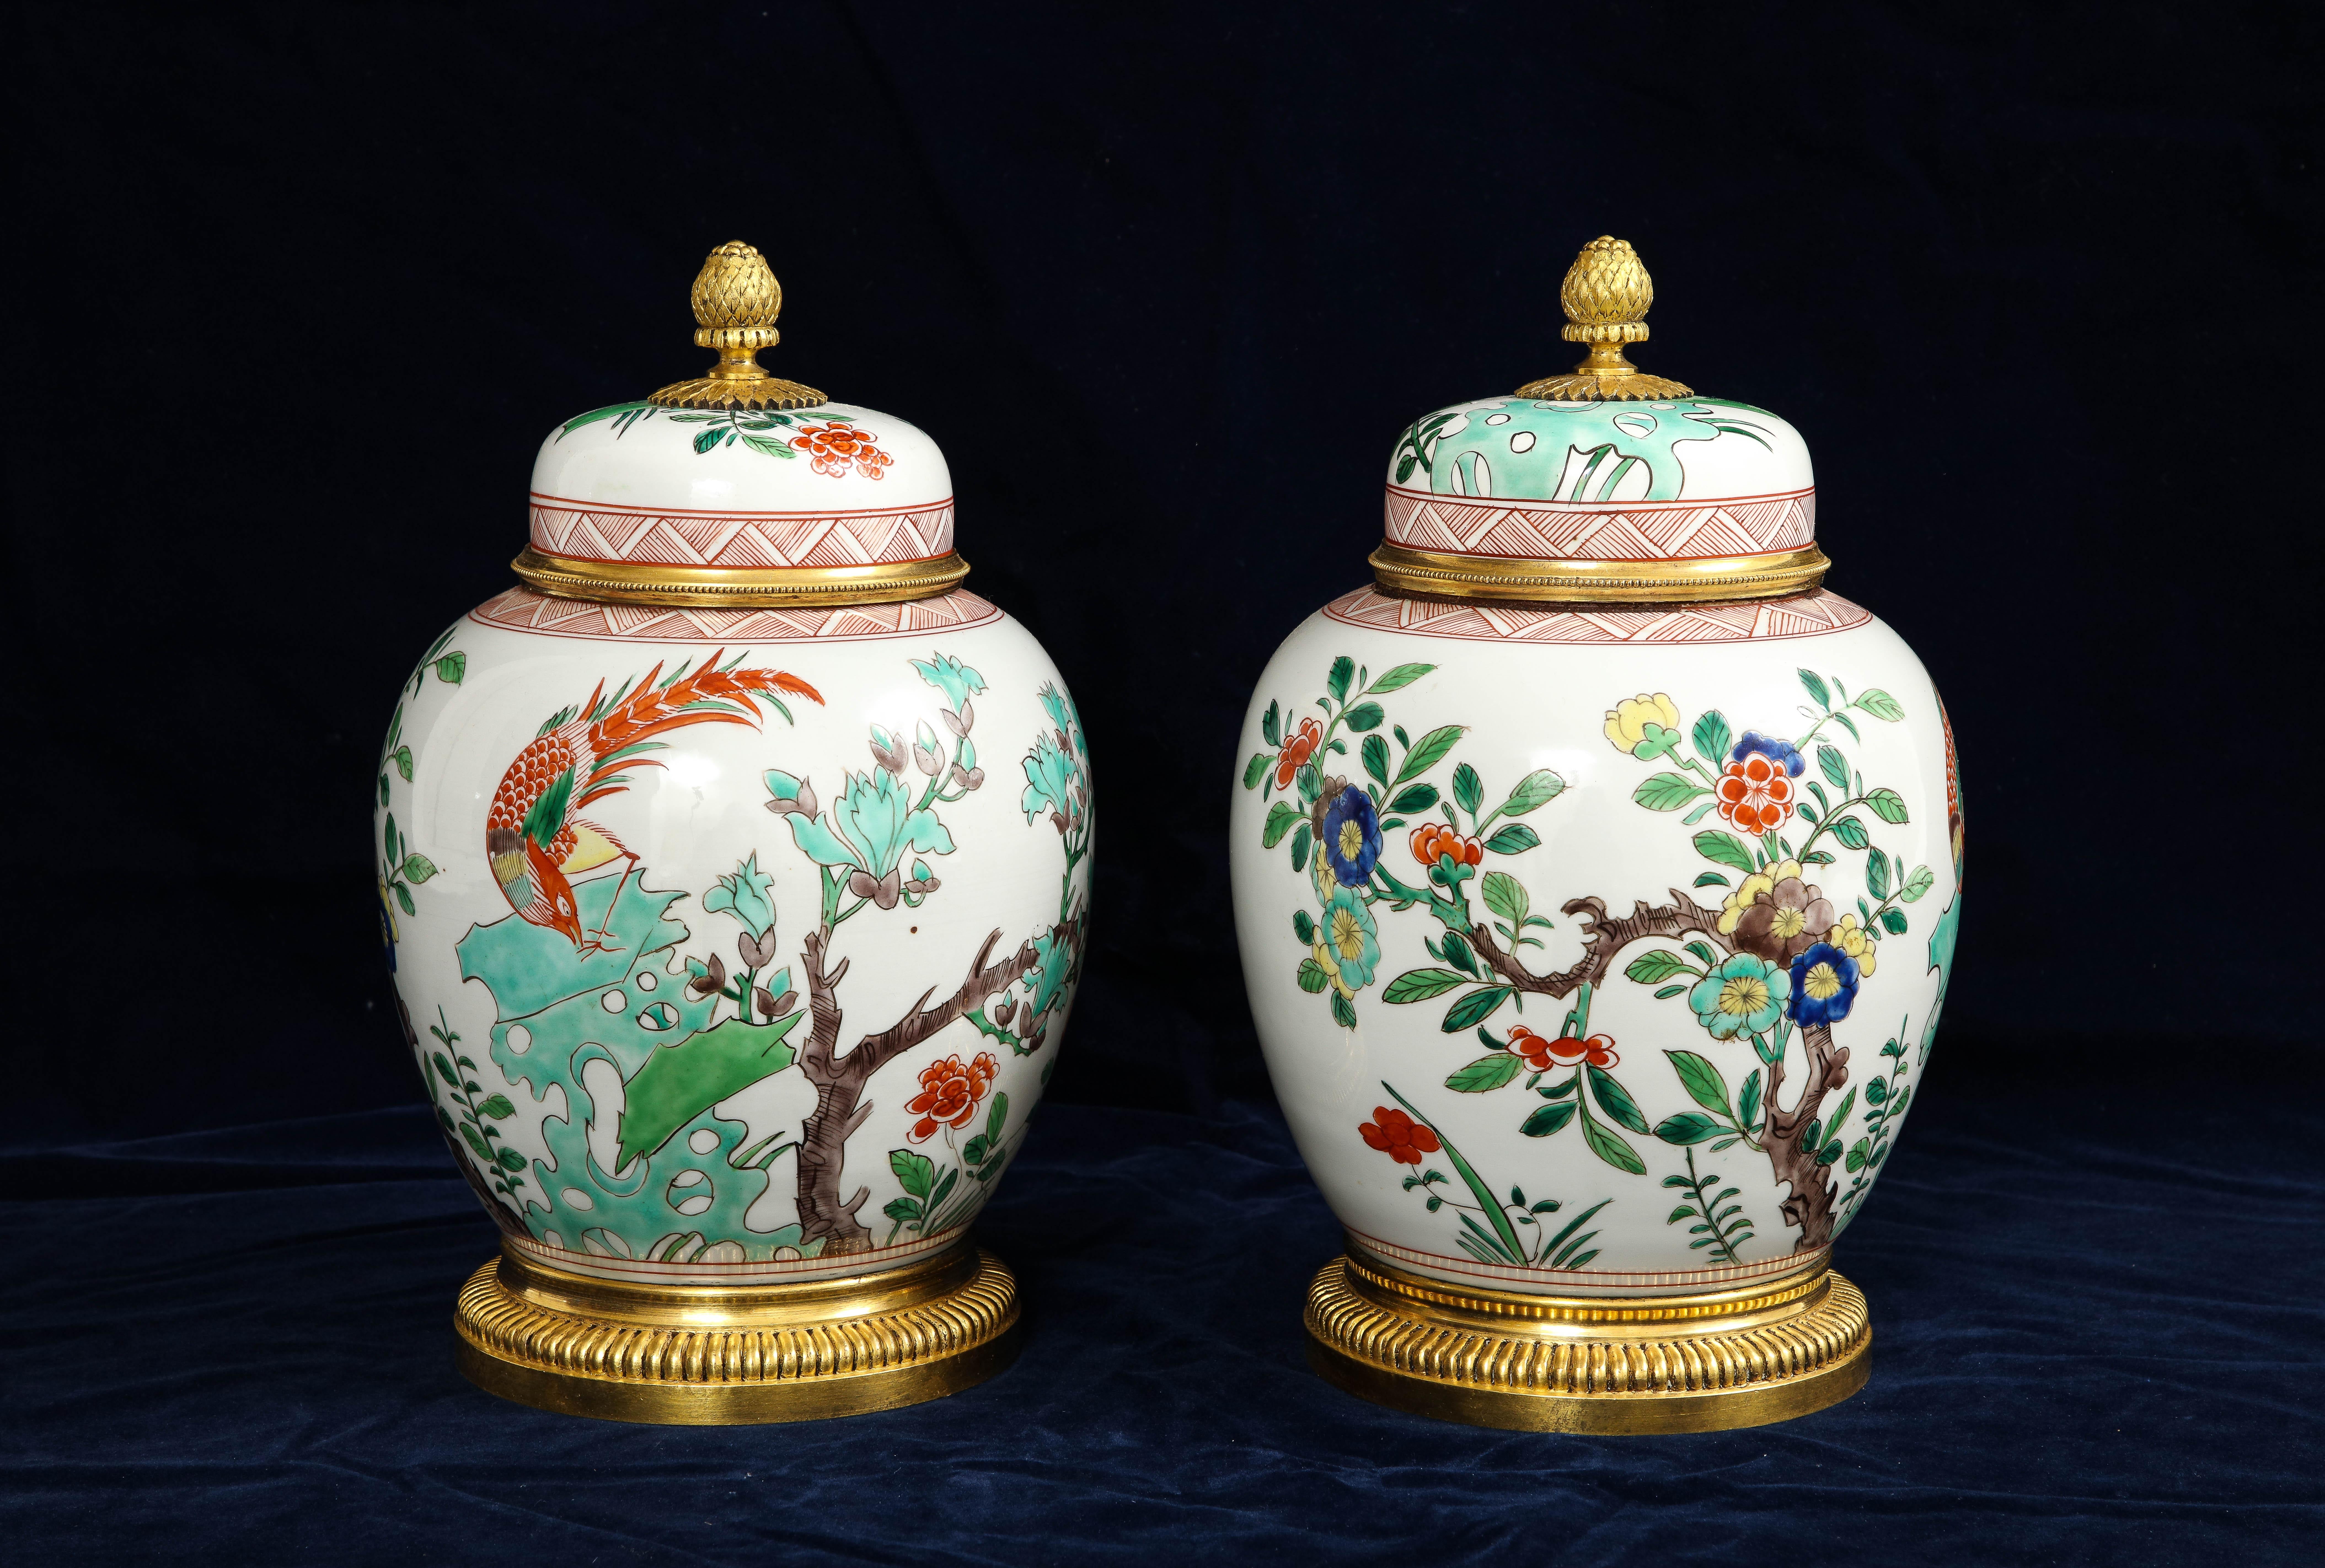 Ein wunderbares Paar von Französisch Dore Bronze montiert Chinese Famille Rose Porzellan bedeckt Vasen.  Vasen sind ein wahres Wunderwerk der antiken Kunst. Beim Betrachten des atemberaubenden Paares werden Sie von den filigranen Details der